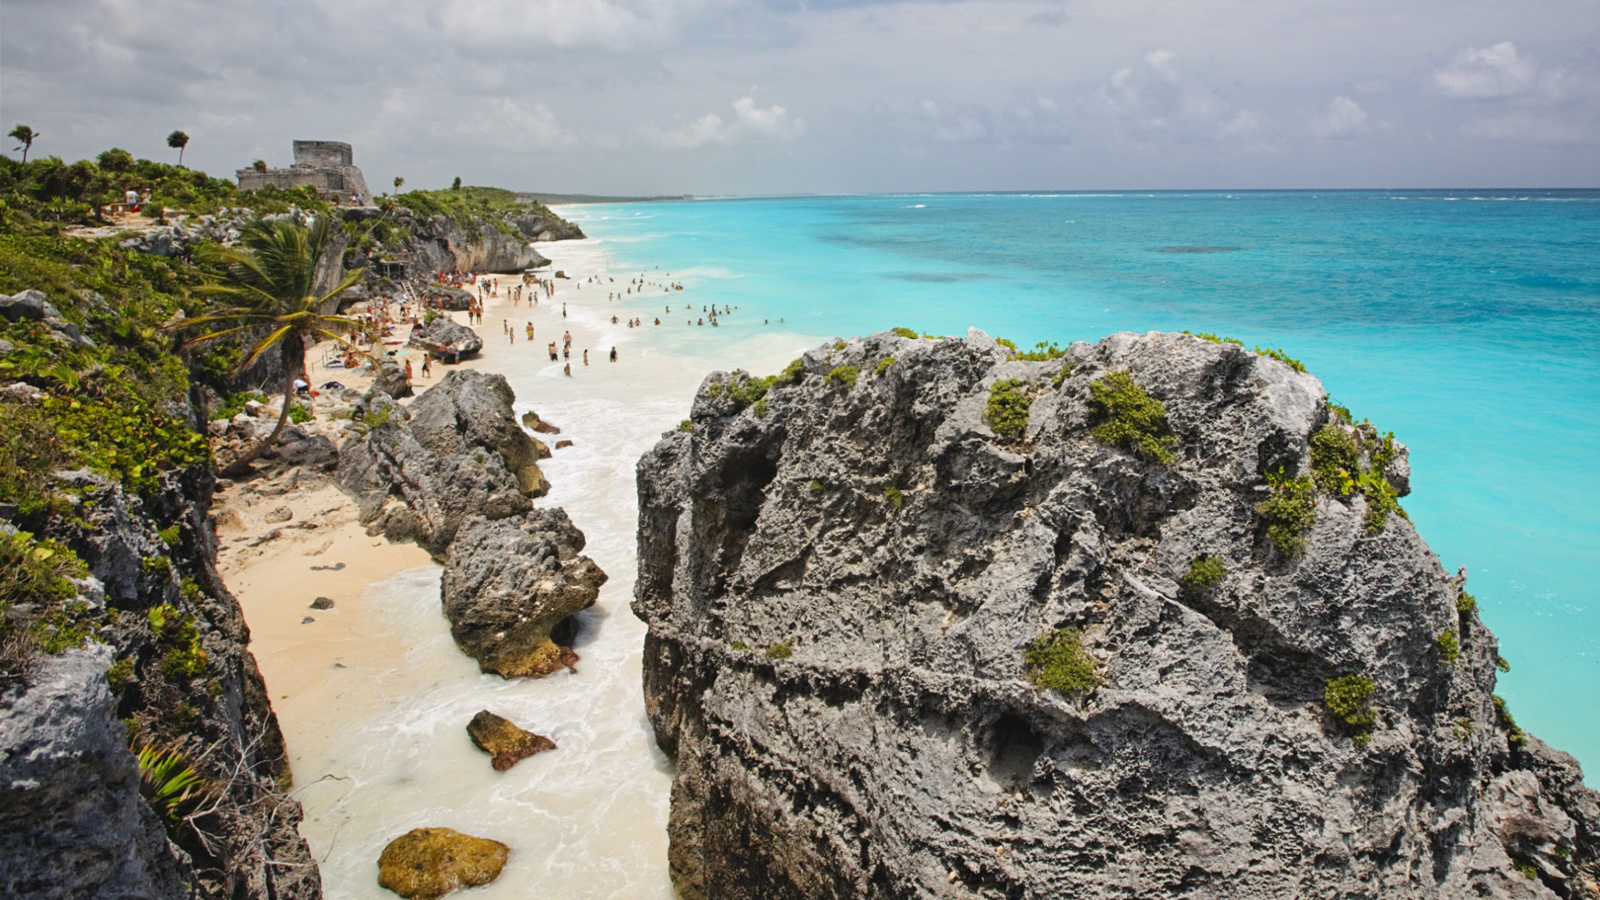 Sfondi Cancun Beach Mexico 1600x900